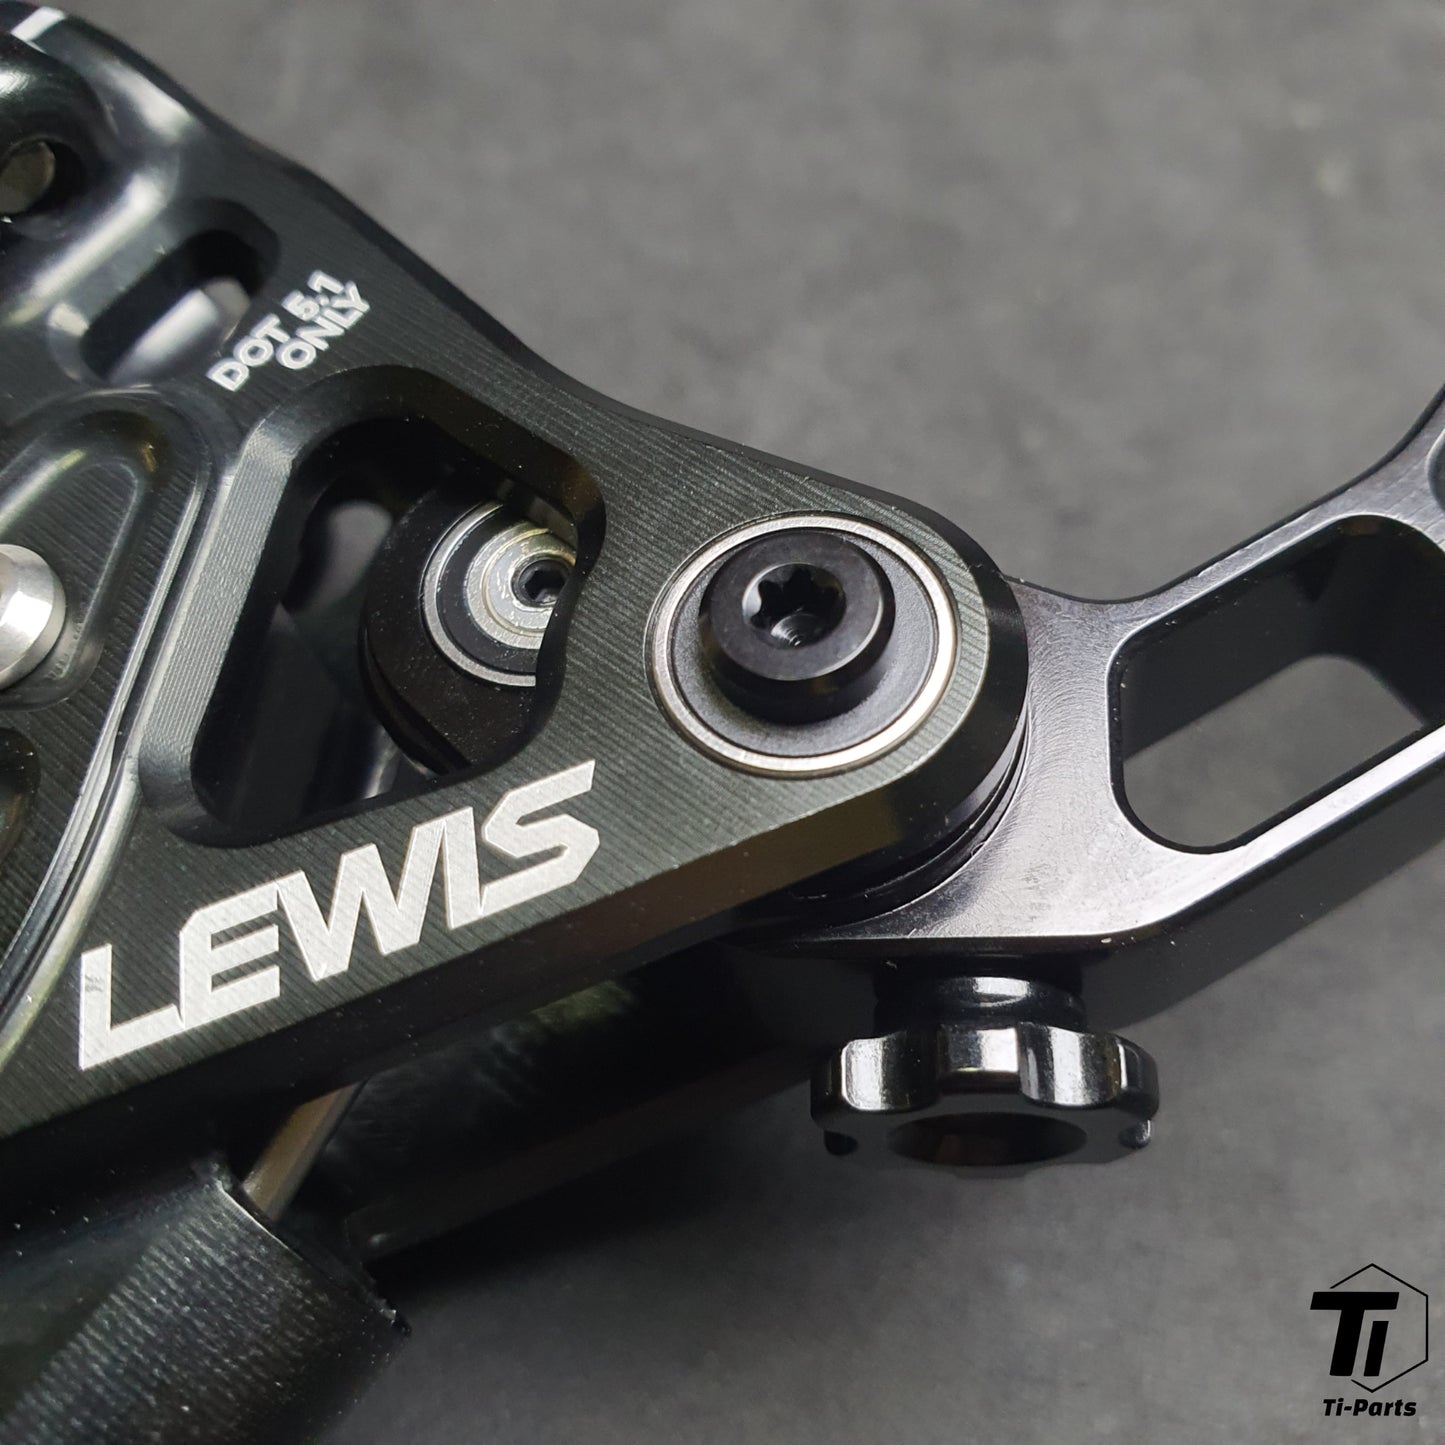 Kit freno Lewis EP8+ 8 pistoni per bici elettrica | Kit aggiornamento freno posteriore | Spedizione gratuita in tutto il mondo